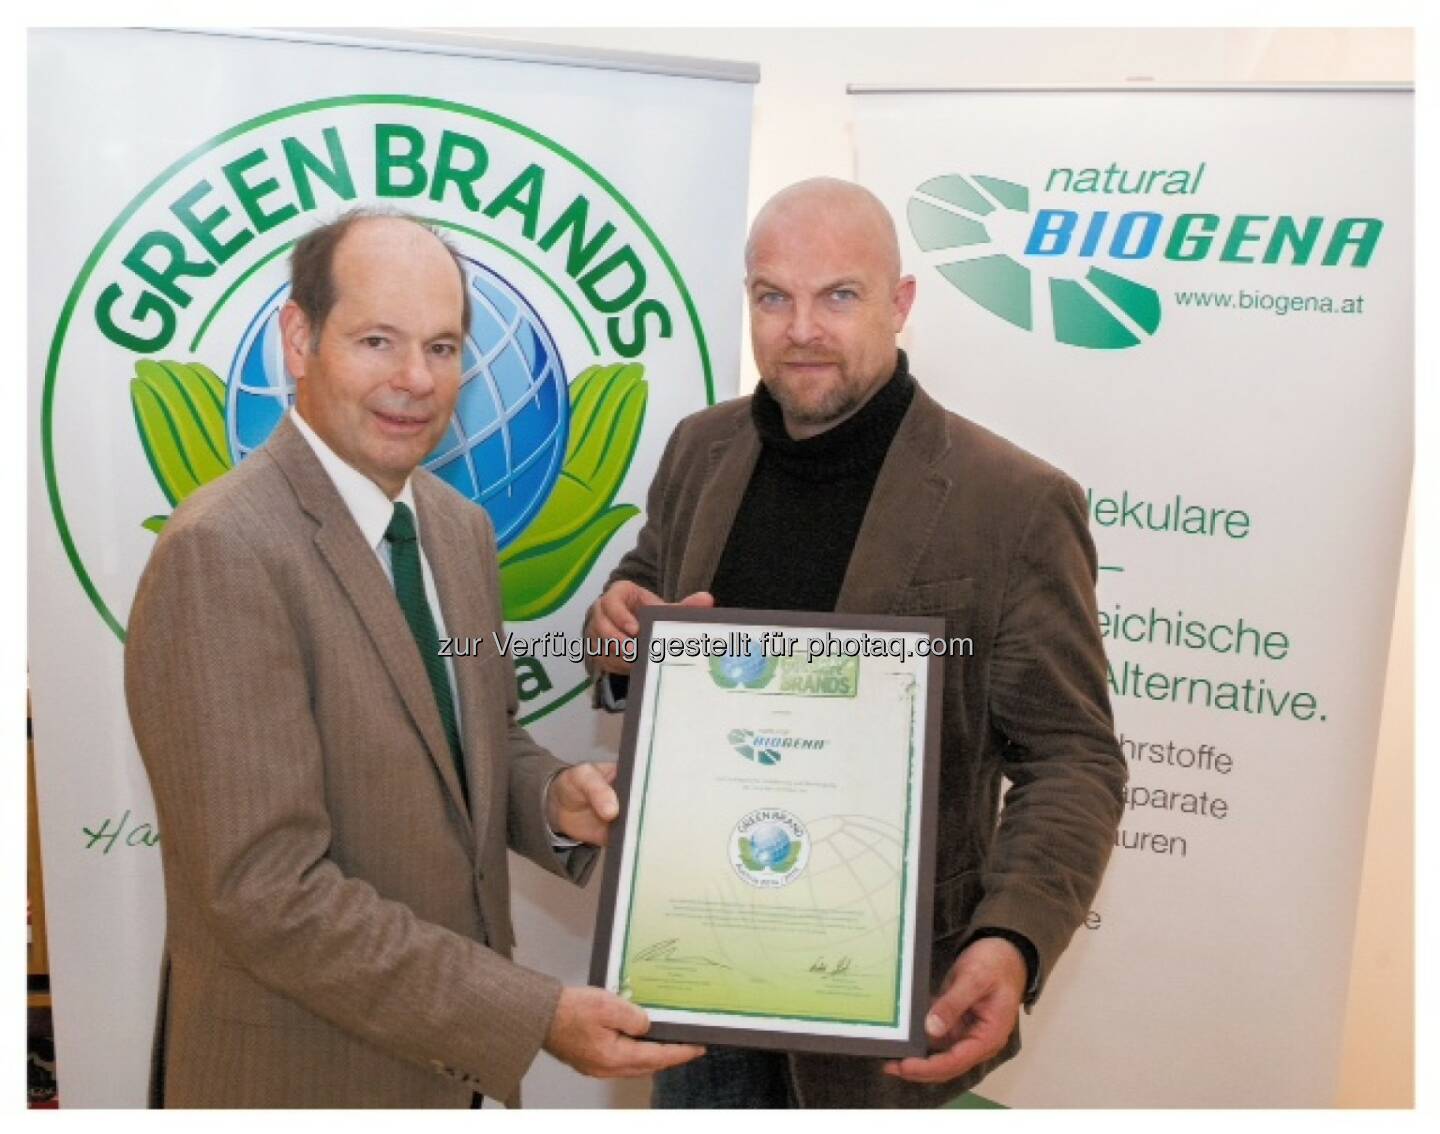 Norbert Lux, COO der Green Brands Organisation, Albert Schmidbauer, Eigentümer der Biogena Naturprodukte GmbH & Co KG: Green Brands Organisation Ltd.: Biogena als erstes Unternehmen aus der Gesundheitsbranche zu den Green Brands Austria ausgezeichnet